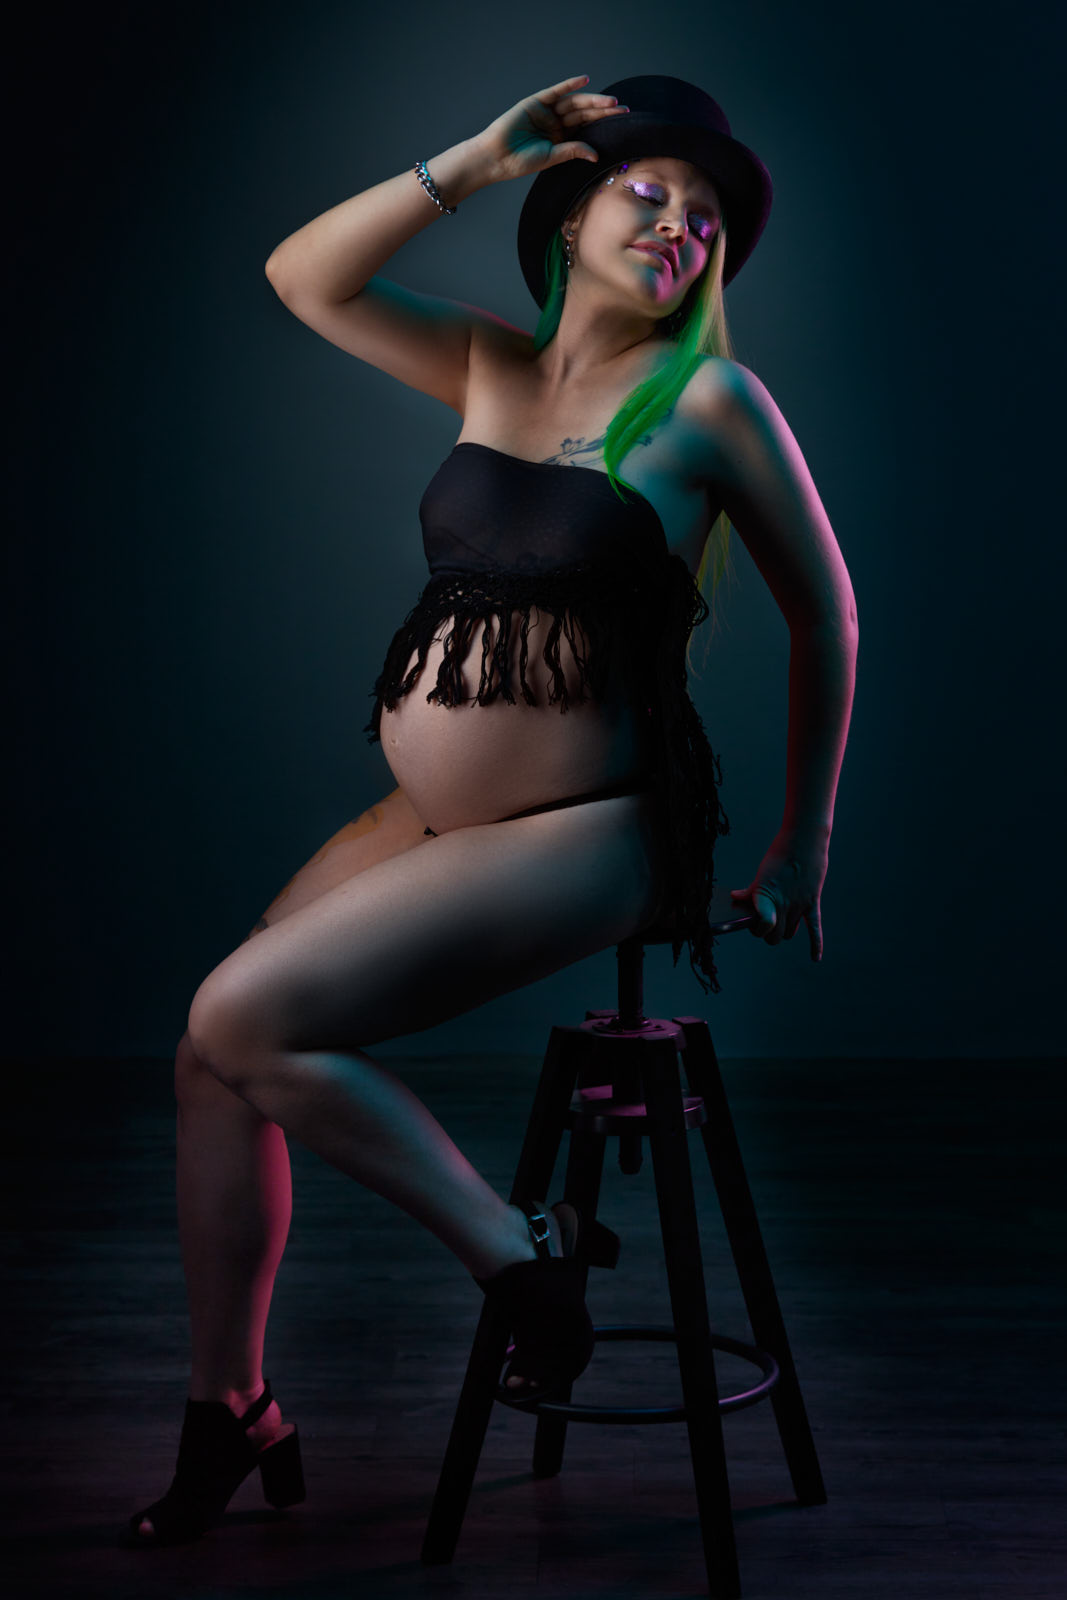 Babybauchfoto einer schwangeren Frau mit grün gefärbten, langen Haaren die auf einem hohen Hocker sitzt, sich zurücklehnt und den Zylinder hält, den sie auf dem Kopf trägt.